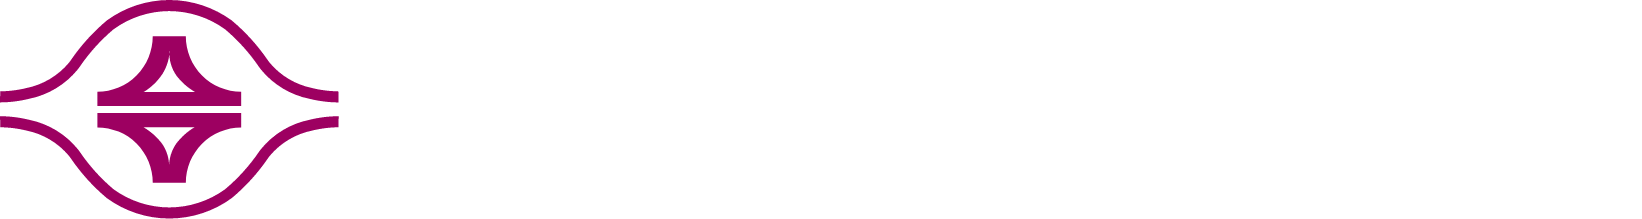 Formosa Plastics Logo groß für dunkle Hintergründe (transparentes PNG)